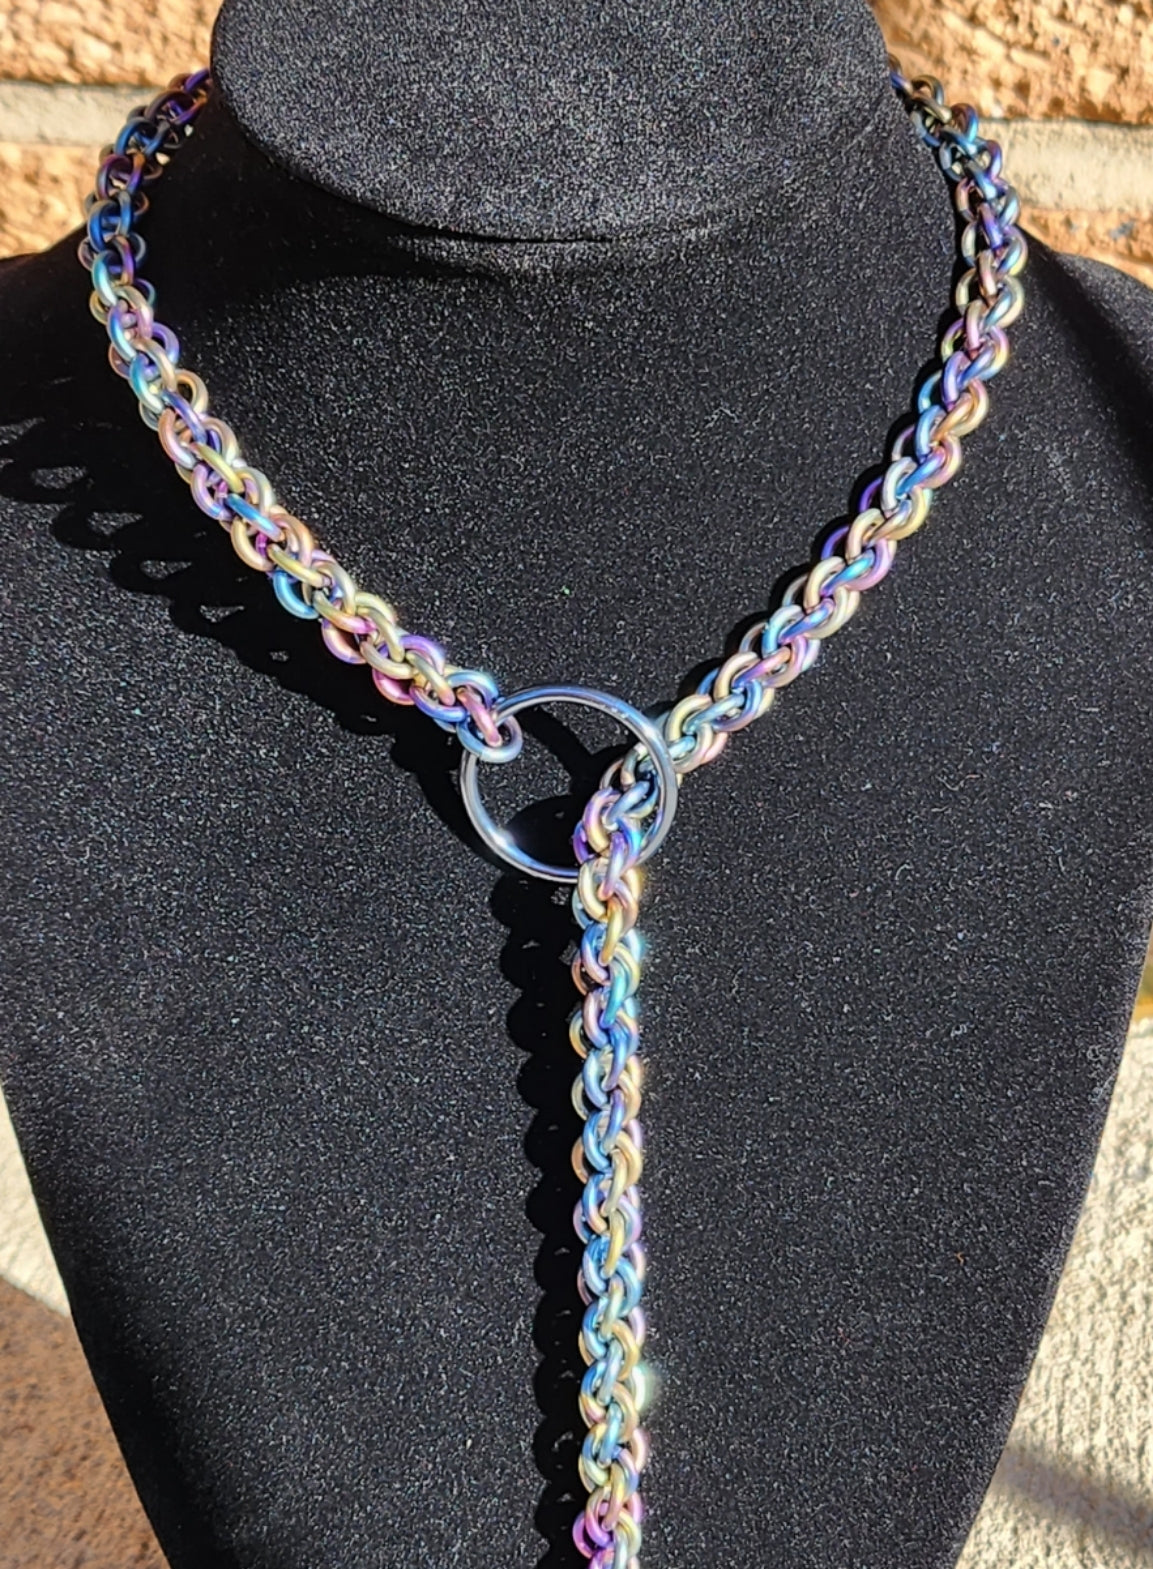 Rainbowed Titanium Lariat "Choke" Chain - Made to Order